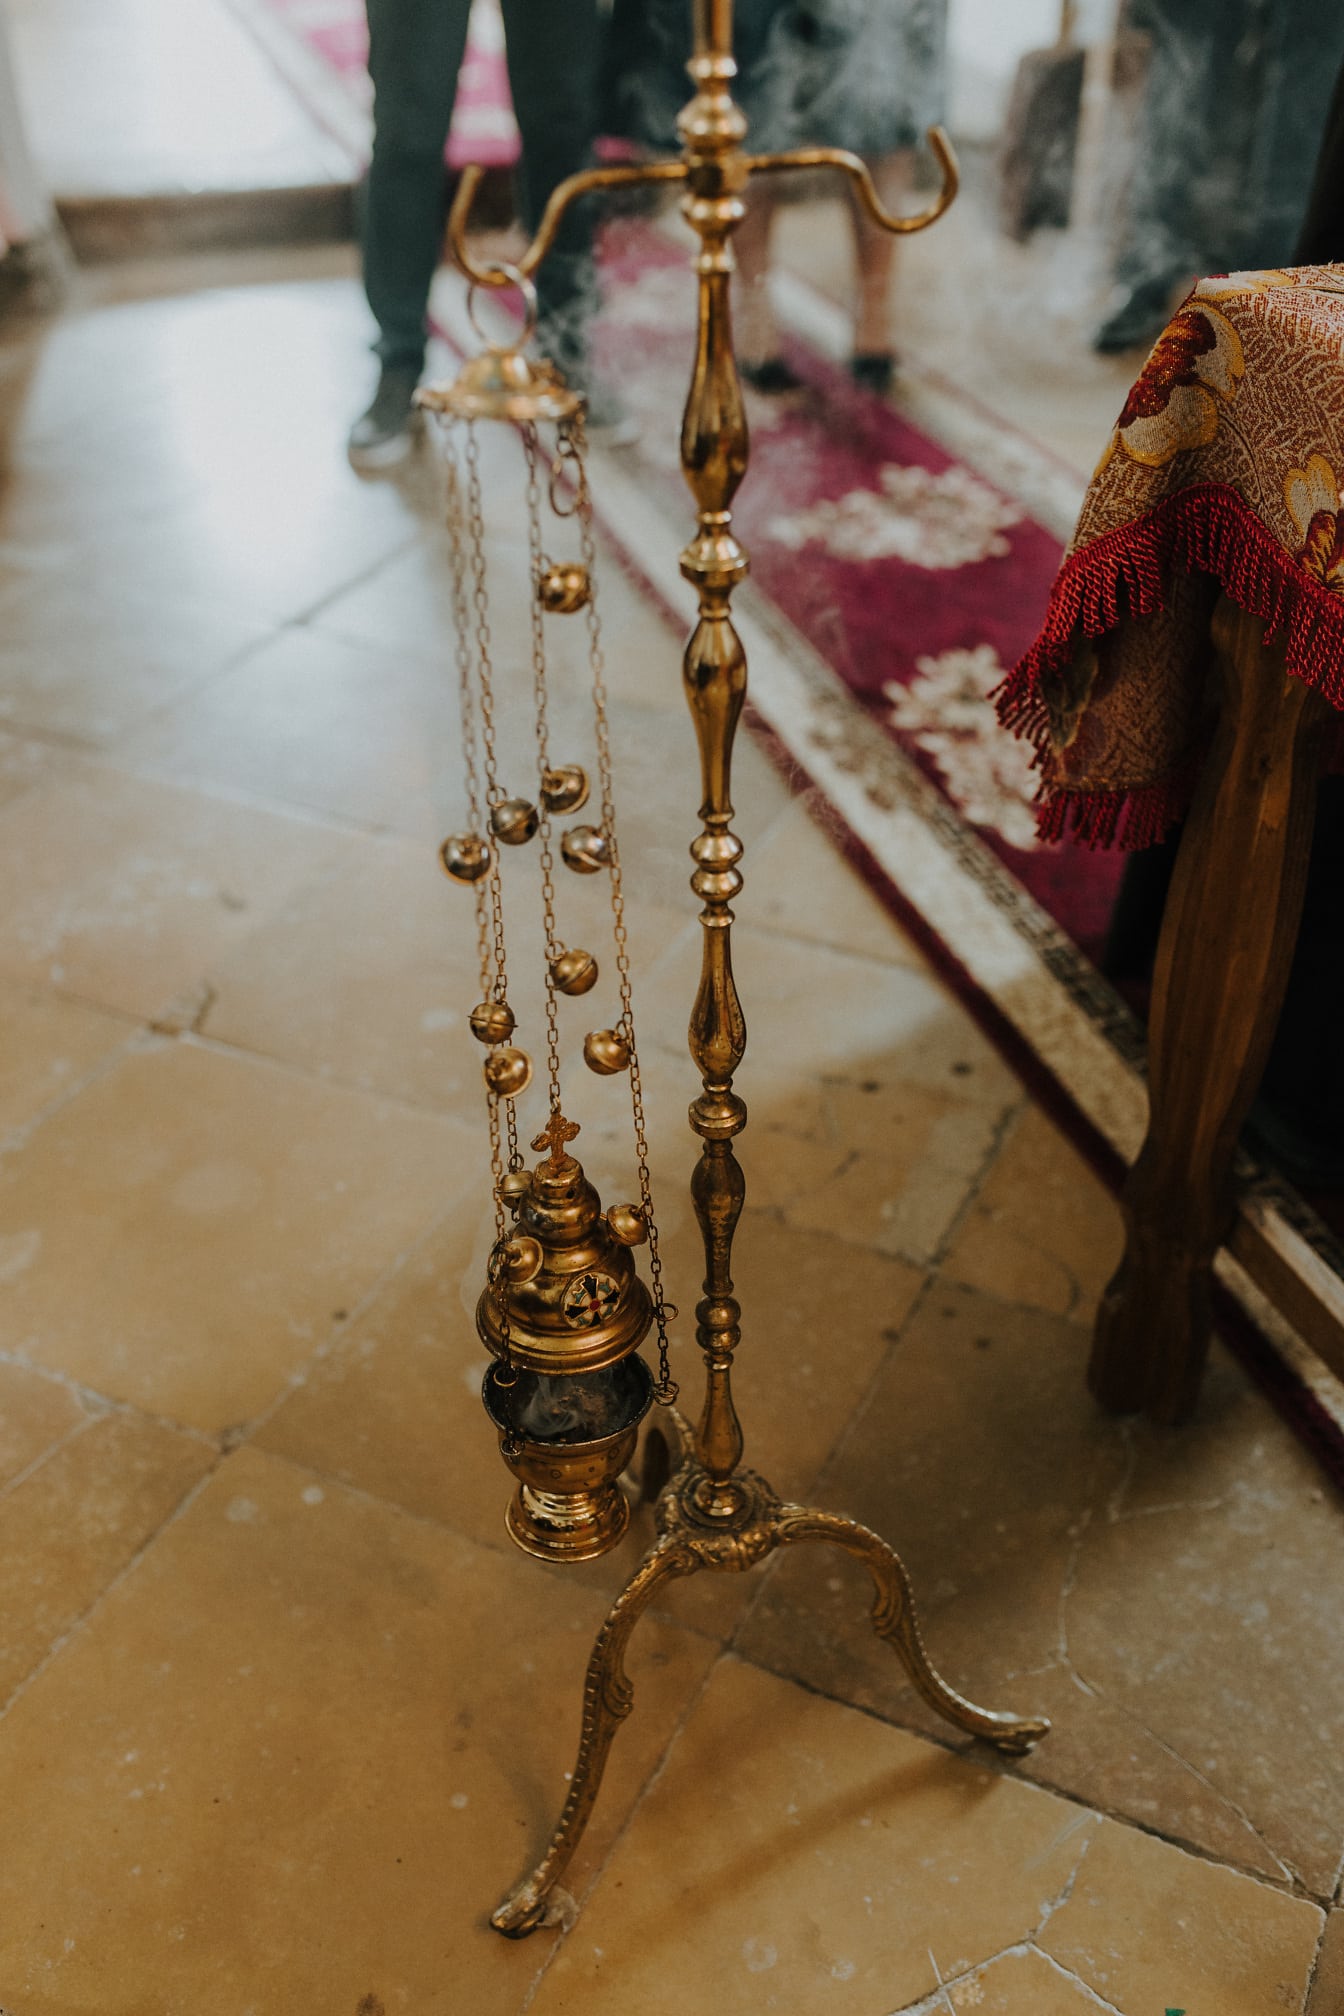 Religiöses Objekt mit goldenem Glanz in der orthodoxen Kirche